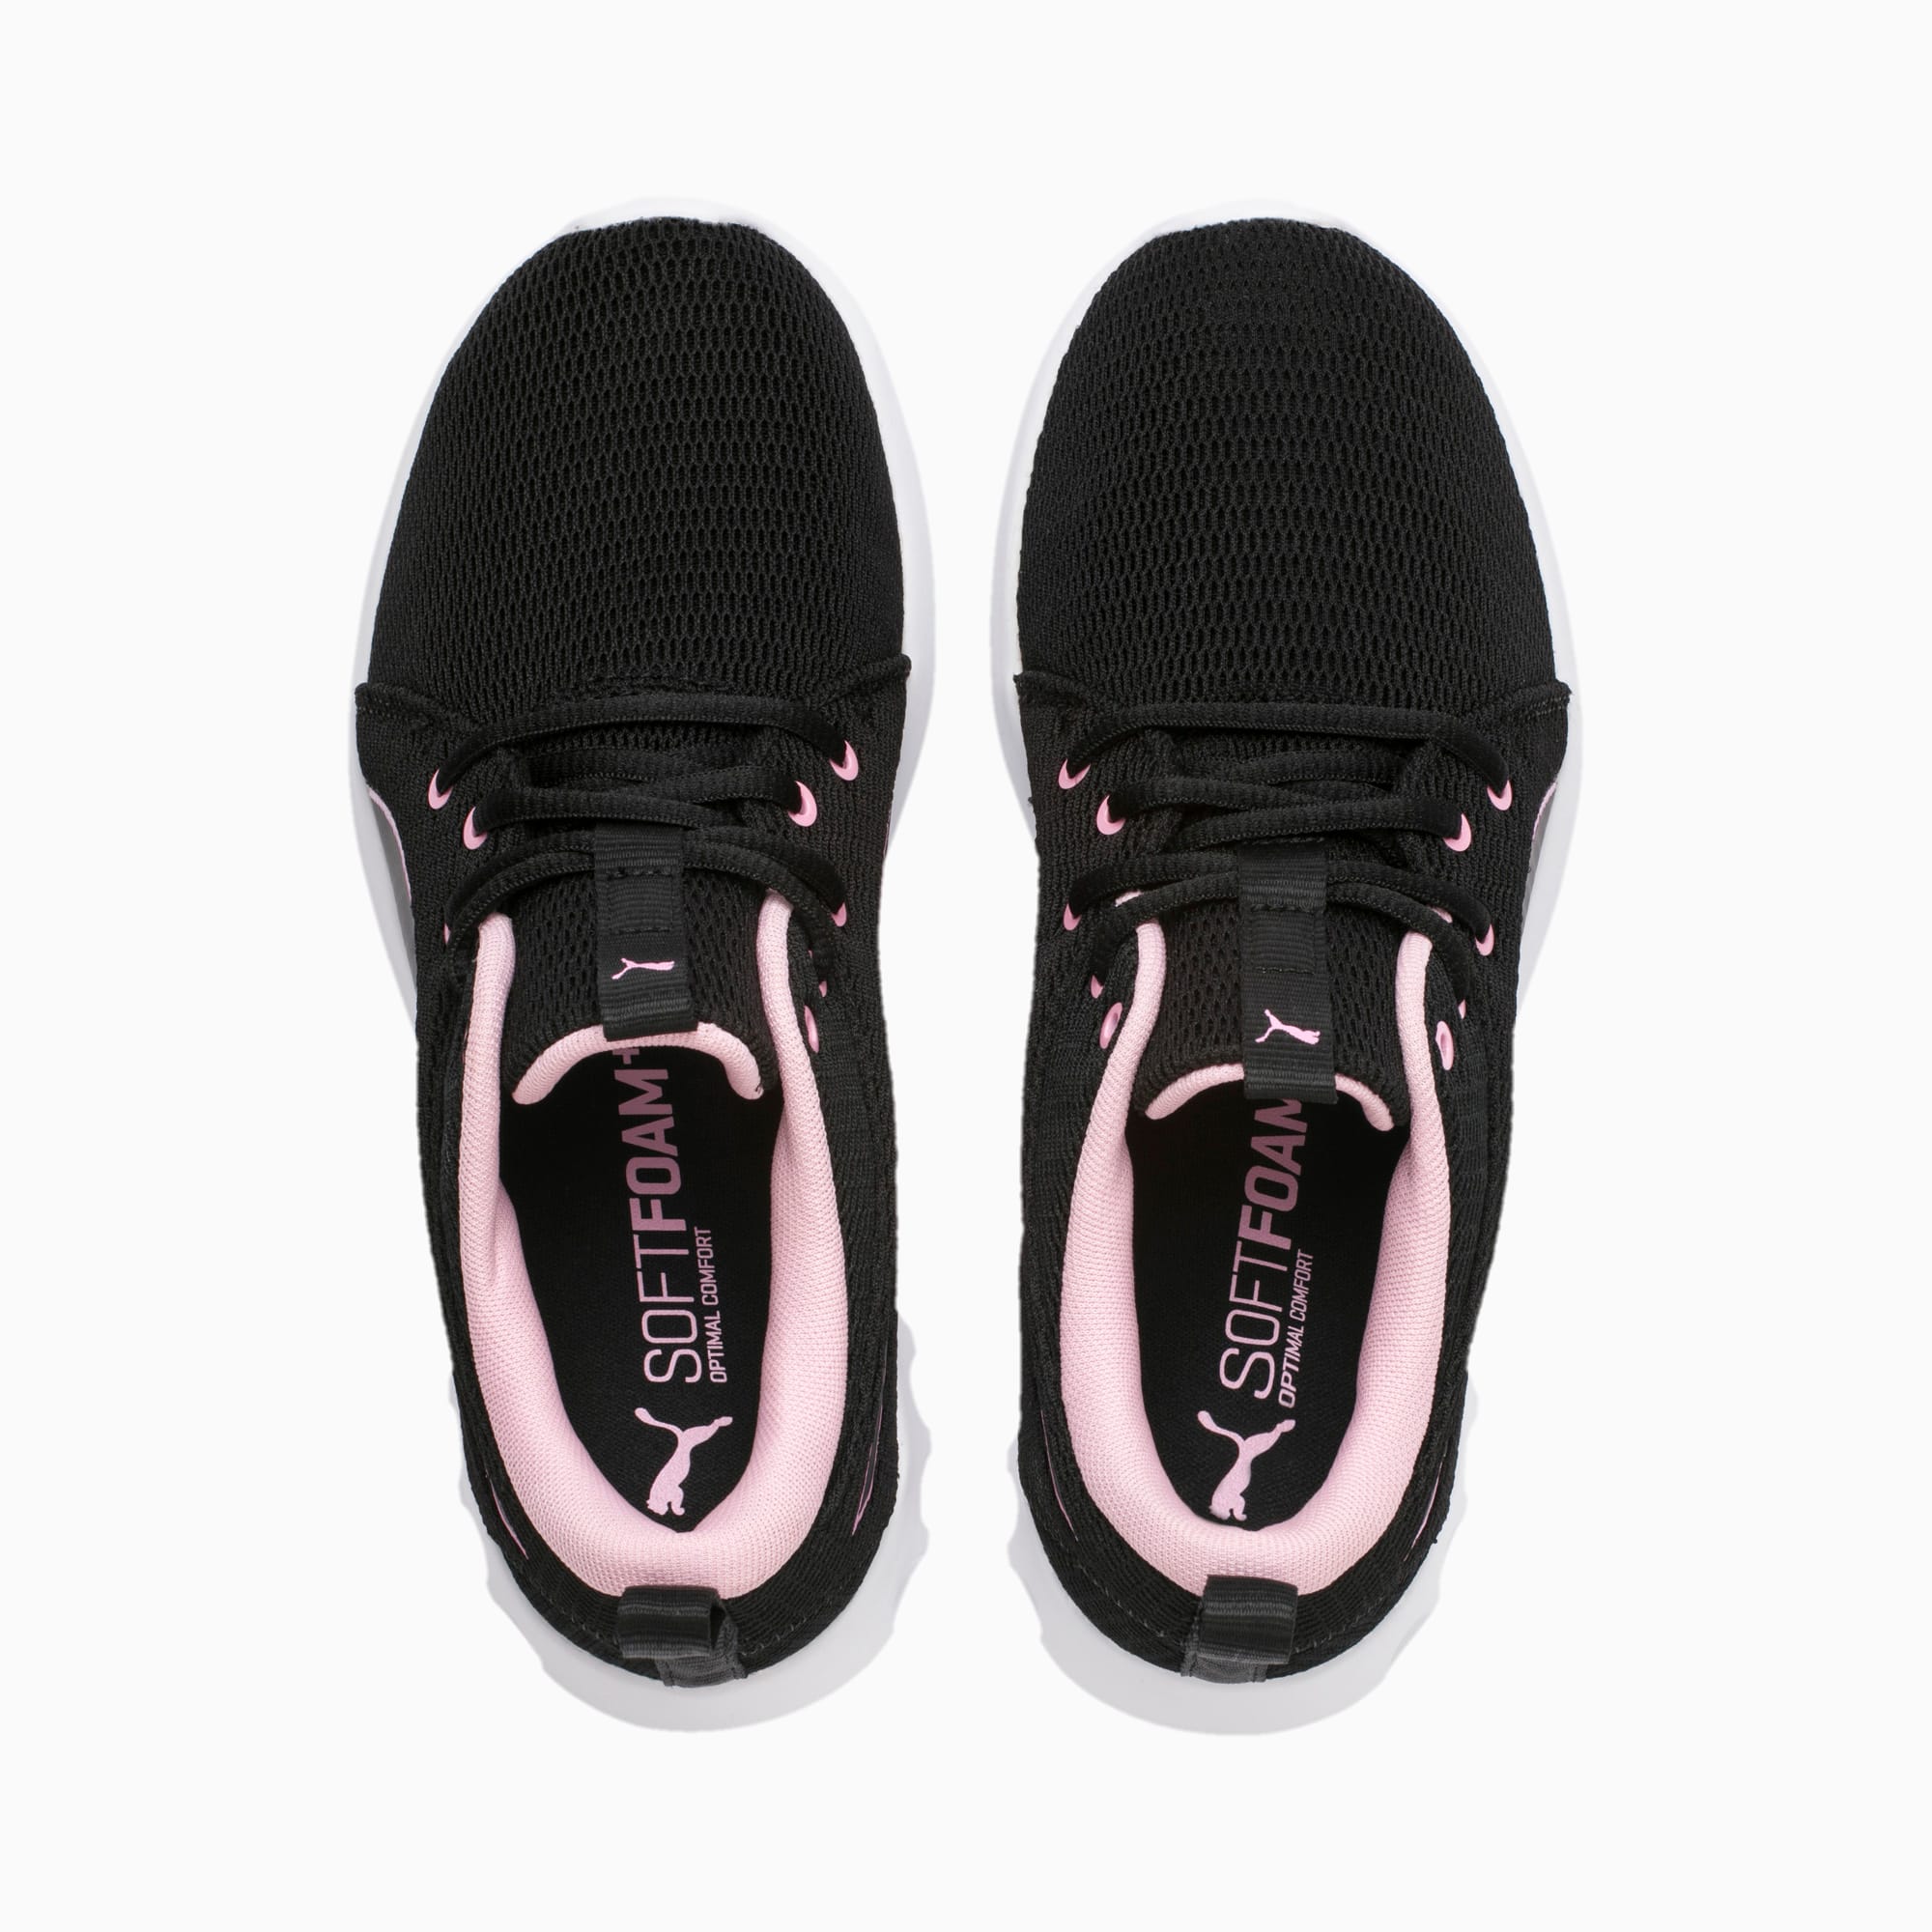 puma comfort shoes